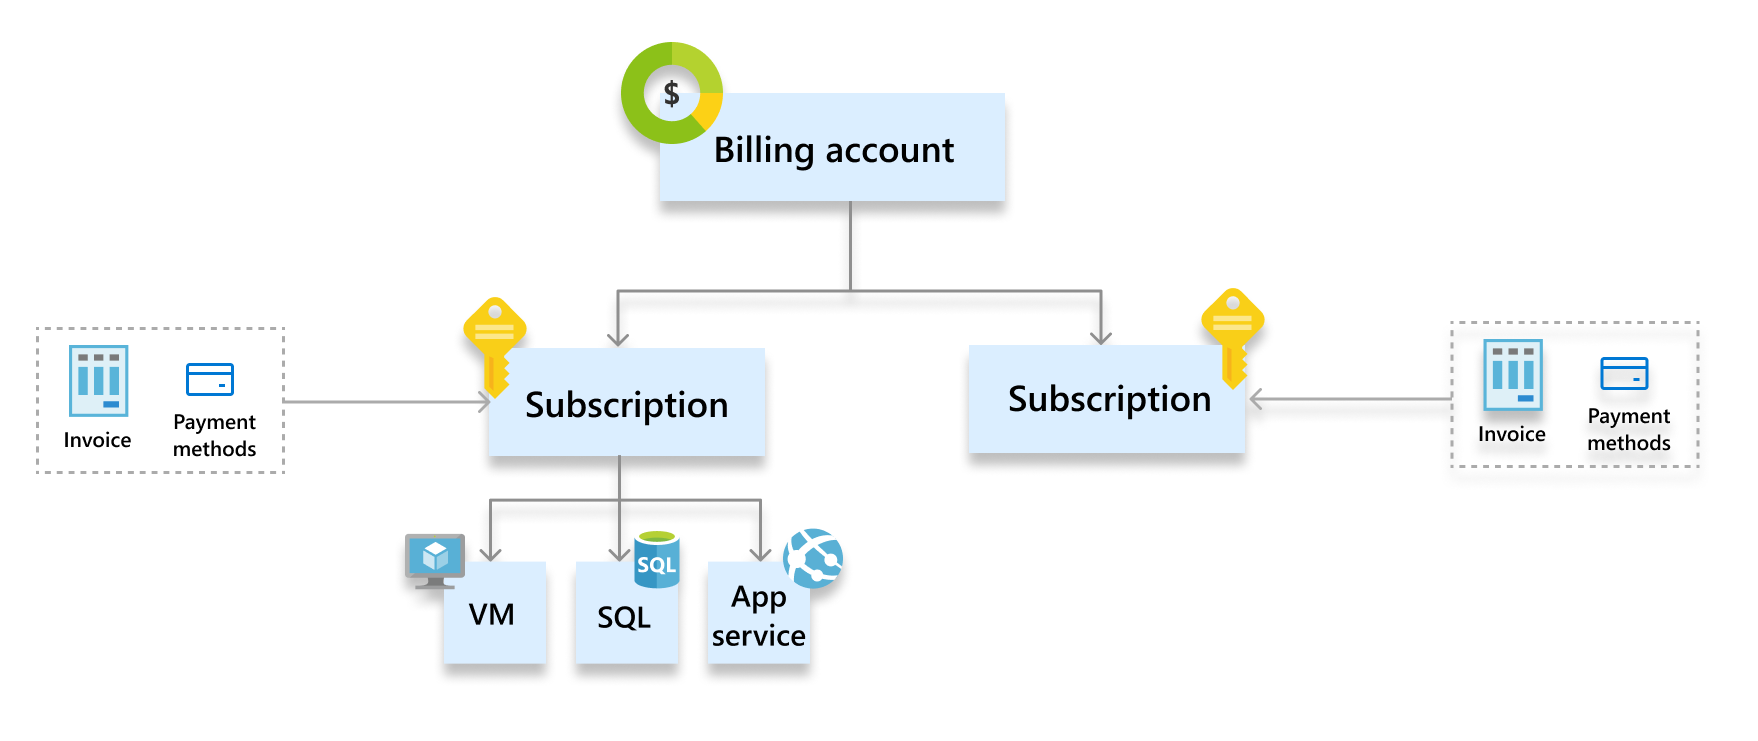 Снимок экрана с иерархией в рамках программы Microsoft Online Services